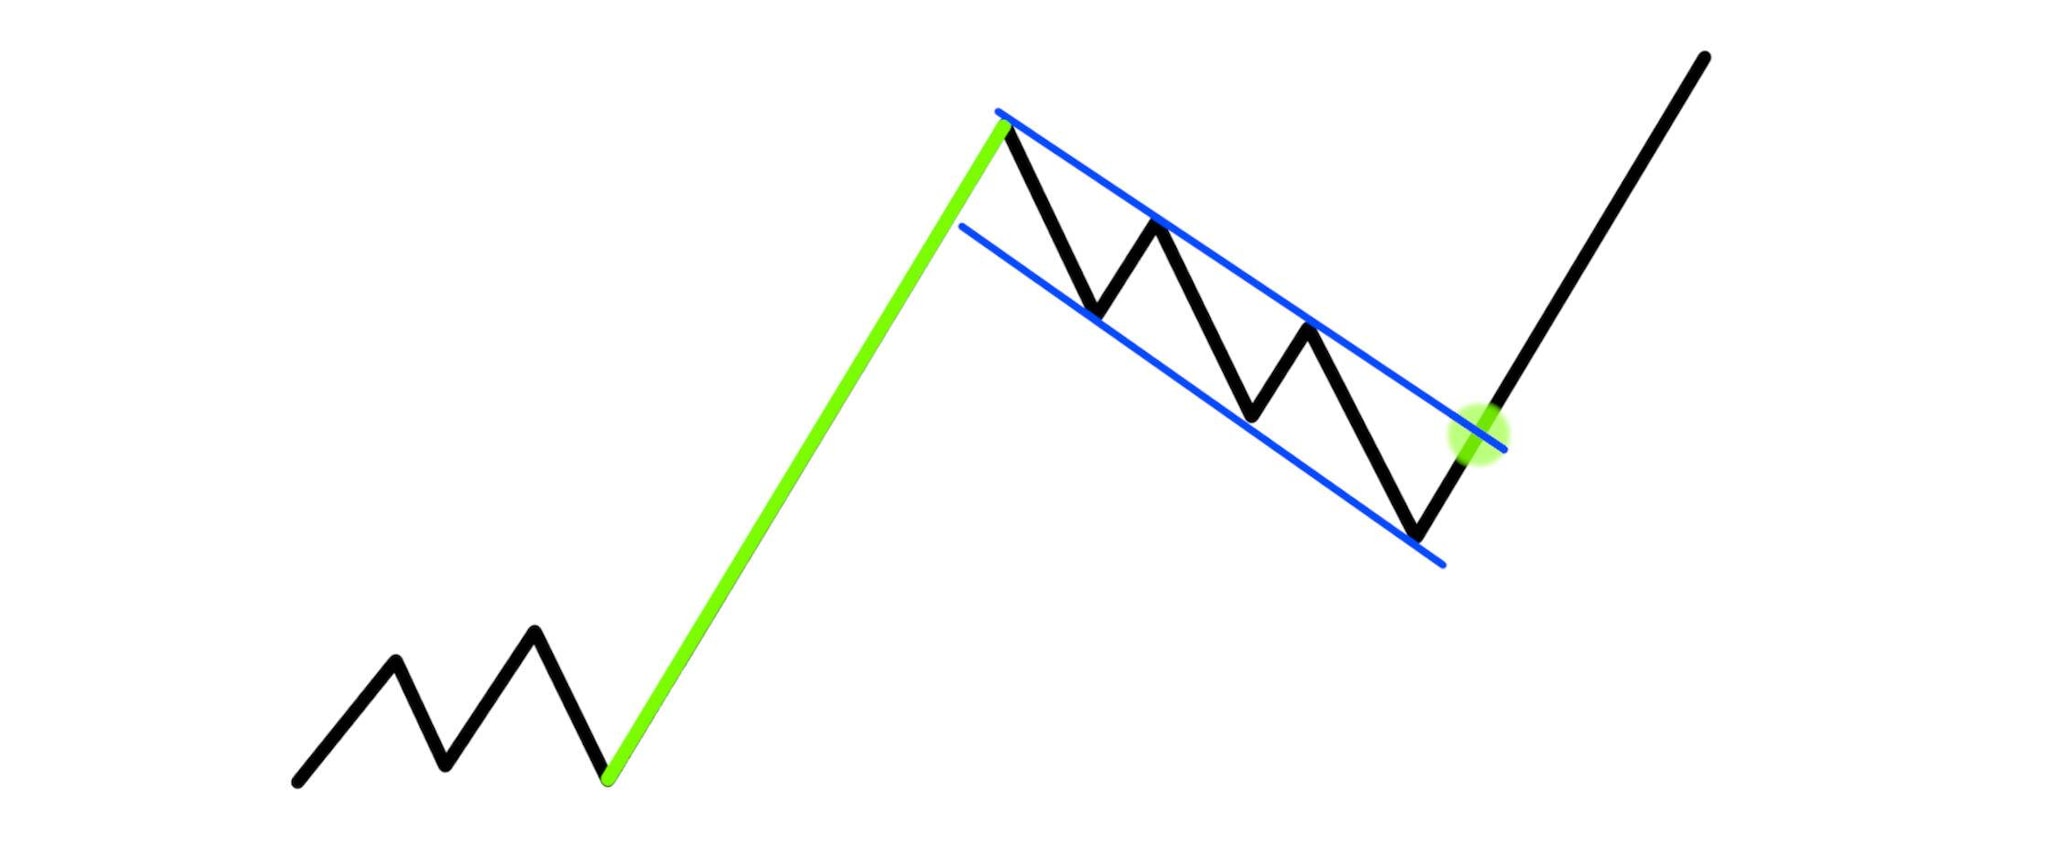 Zwei parallele blaue Linien markieren den Abschnitt eines Kursverlaufs, der nach einem ansteigenden Kurs von einem Kursanstieg unterbrochen wird, bevor er weiter steigt.